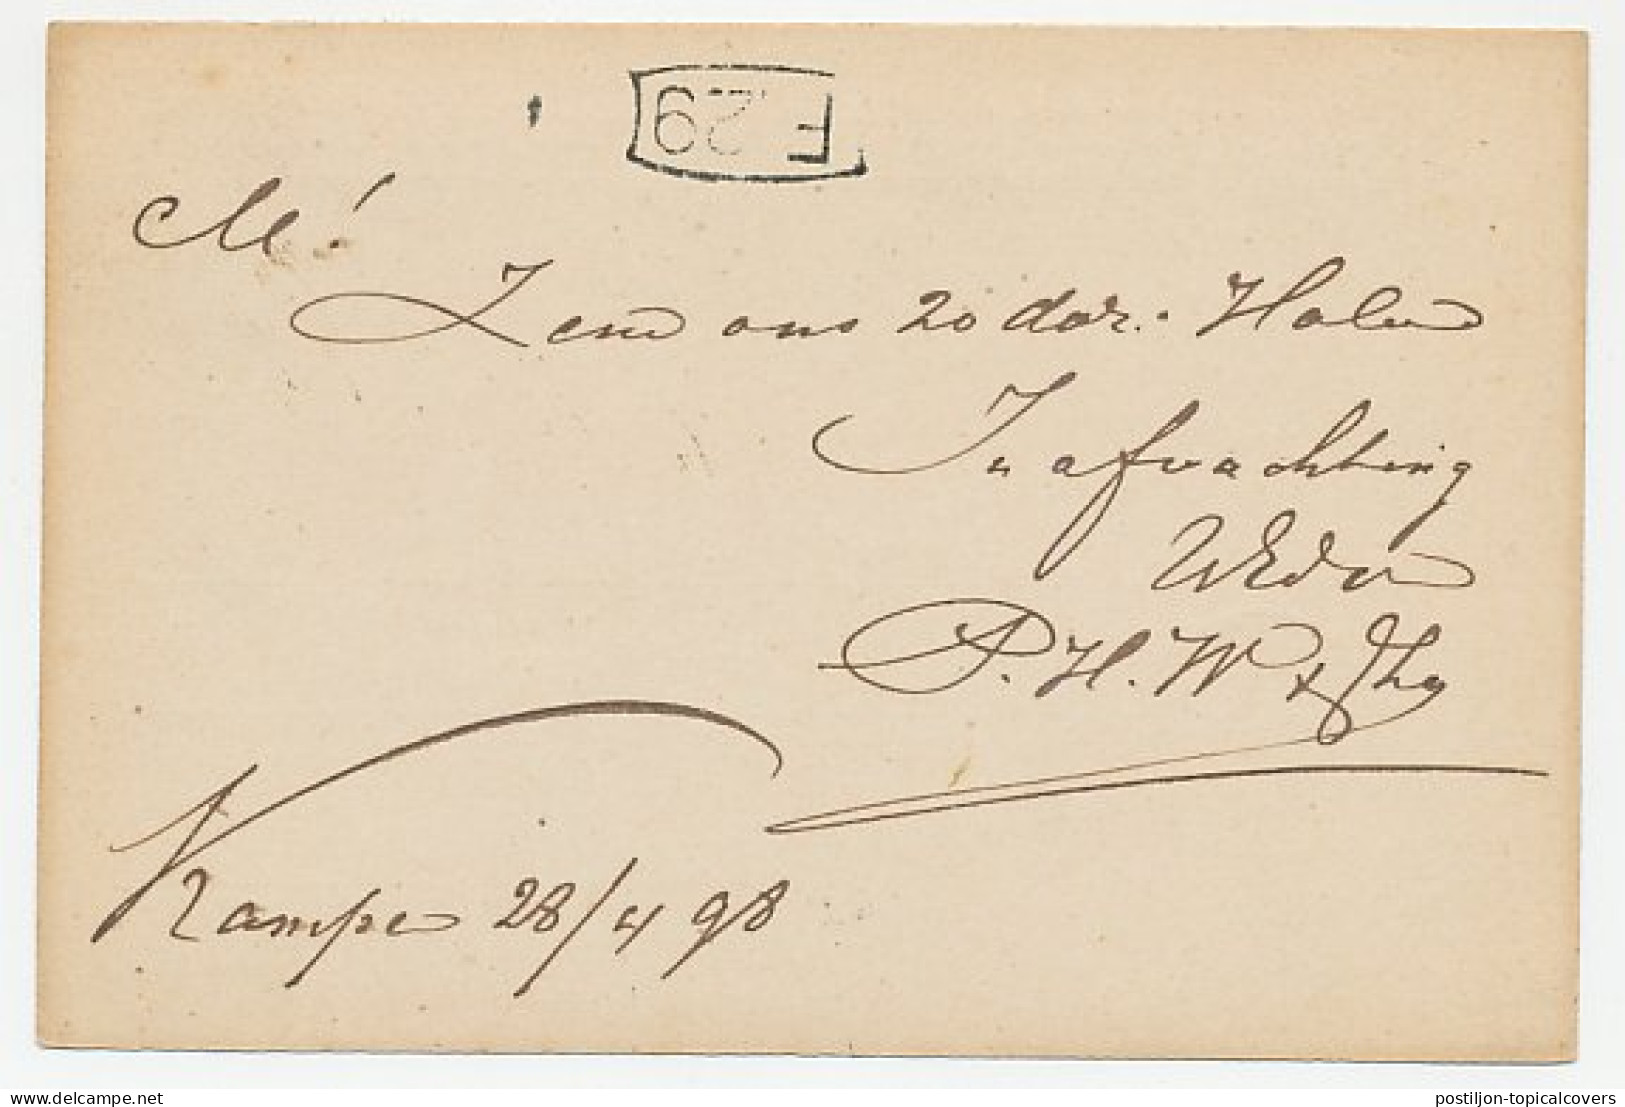 Firma Briefkaart Kampen 1898 - Werff & Zoon - Ohne Zuordnung